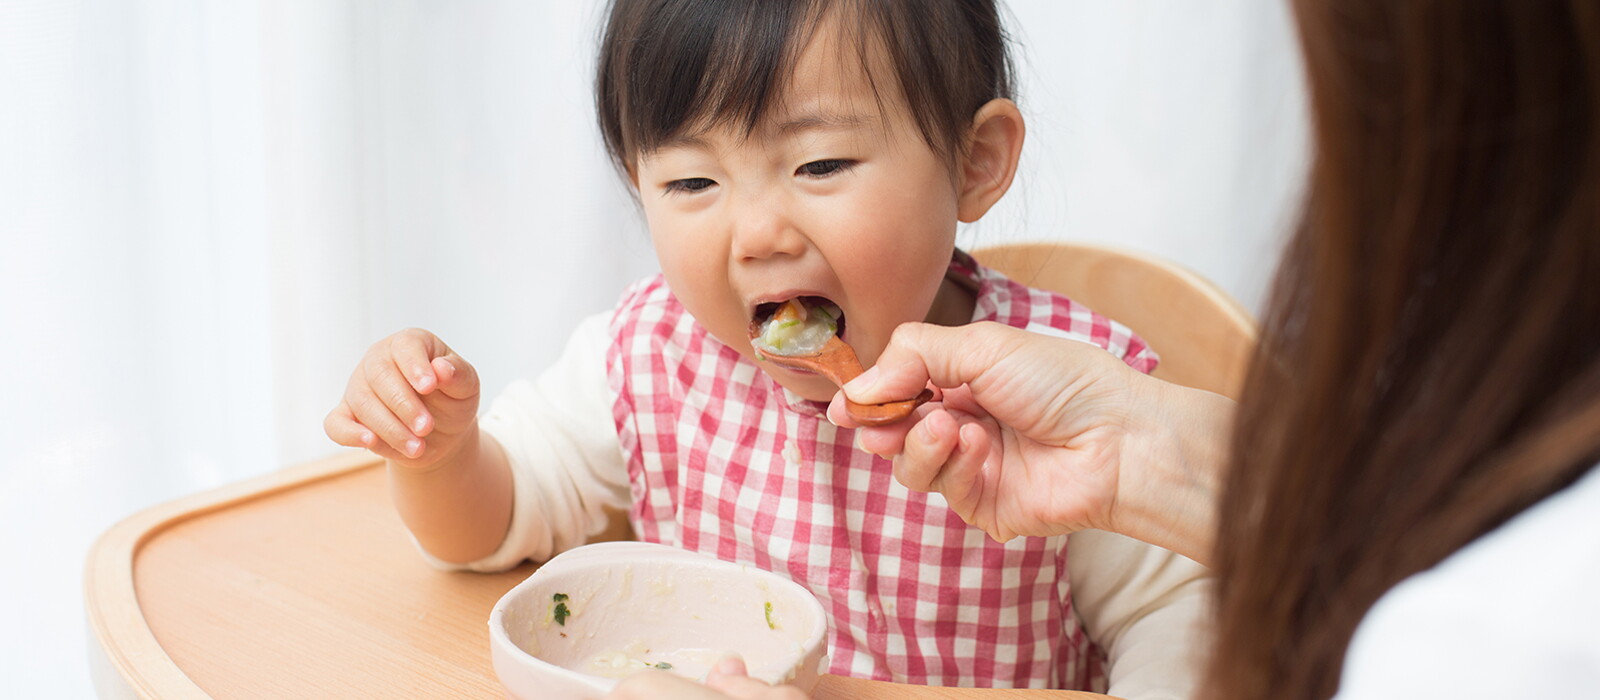 Ketahui Nutrisi Dan Stimulasi yang Tepat Agar Anak Pintar